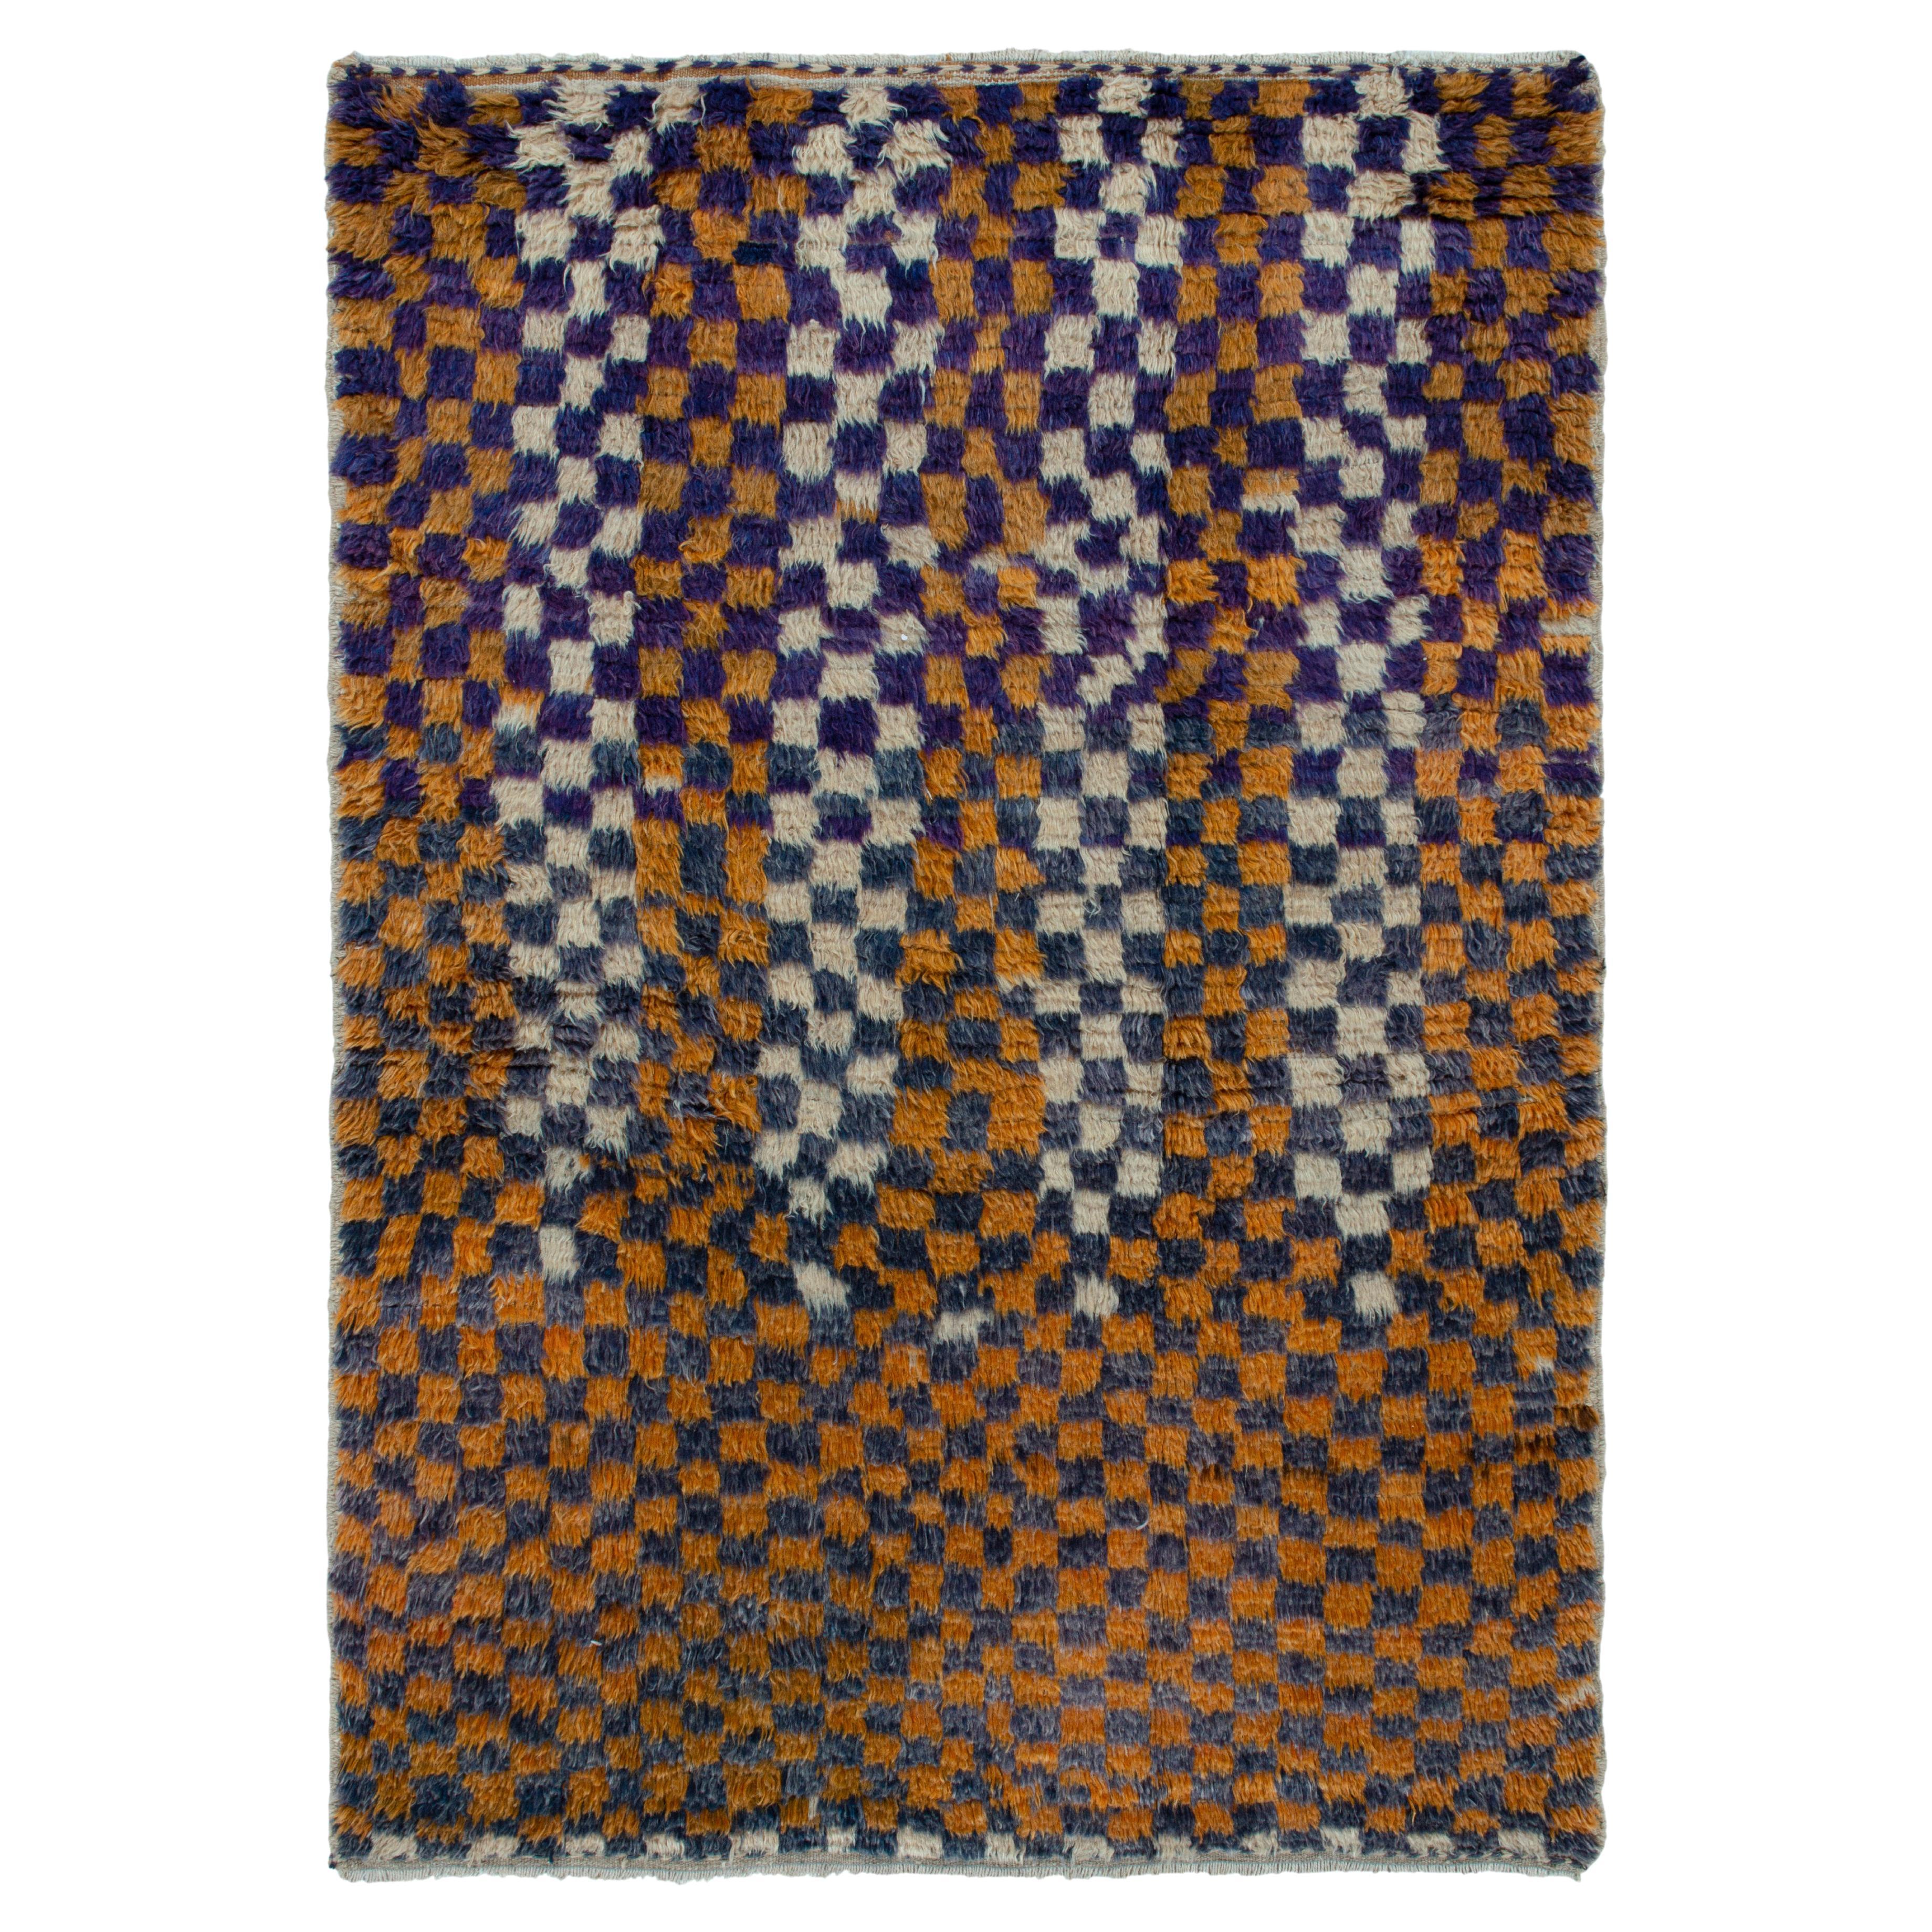 1950s Vintage Tulu Tribal Rug in Orange-Gold Geometric Pattern by Rug & Kilim